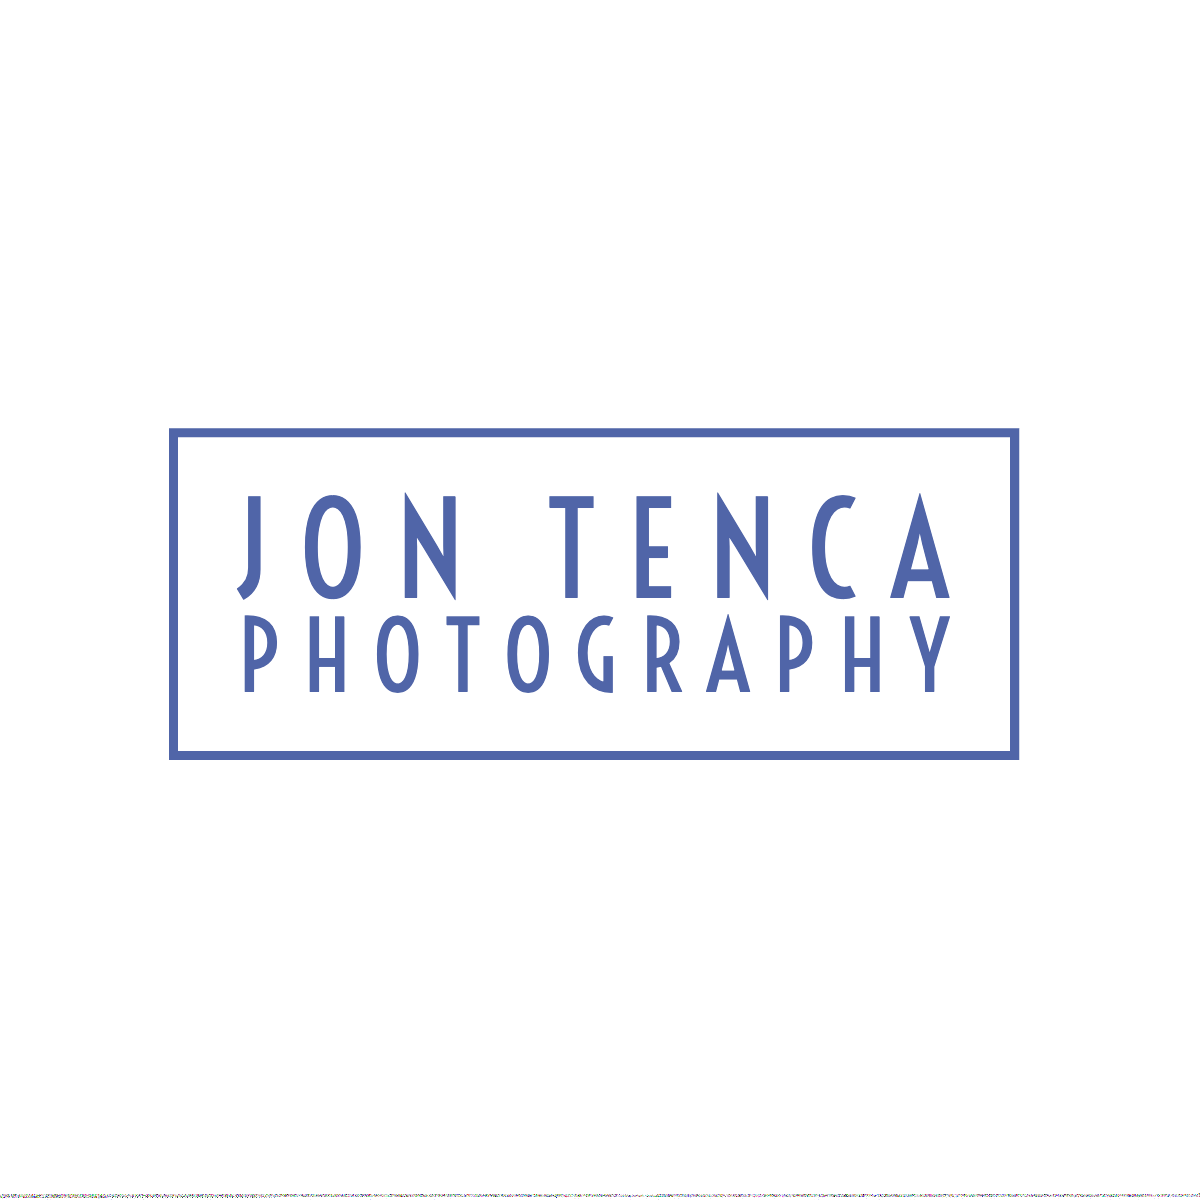 Jon Tenca